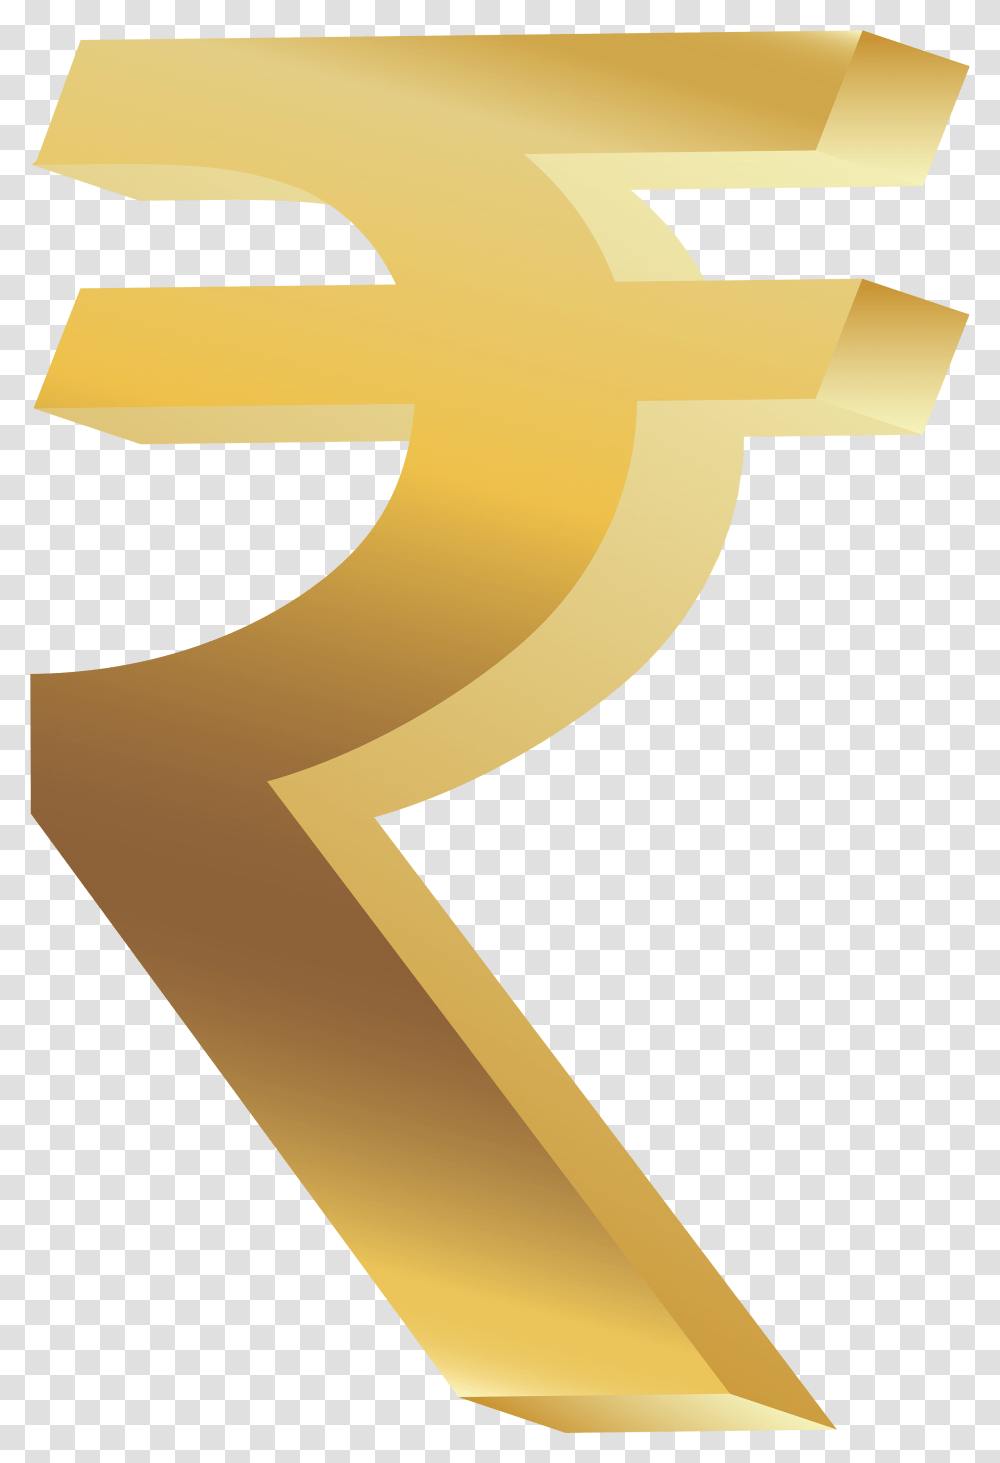 Golden Rupees Symbol, Cross, Number, Label Transparent Png